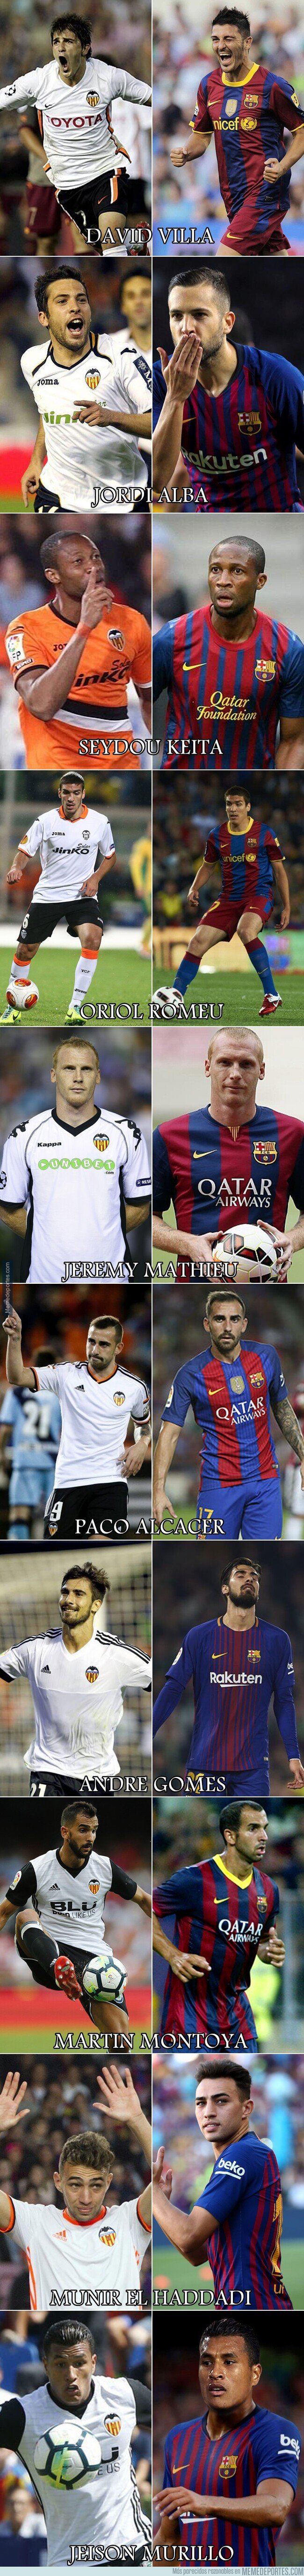 1059596 - Los últimos 10 jugadores en jugar con el Barça y el Valencia. Mucha fraternidad